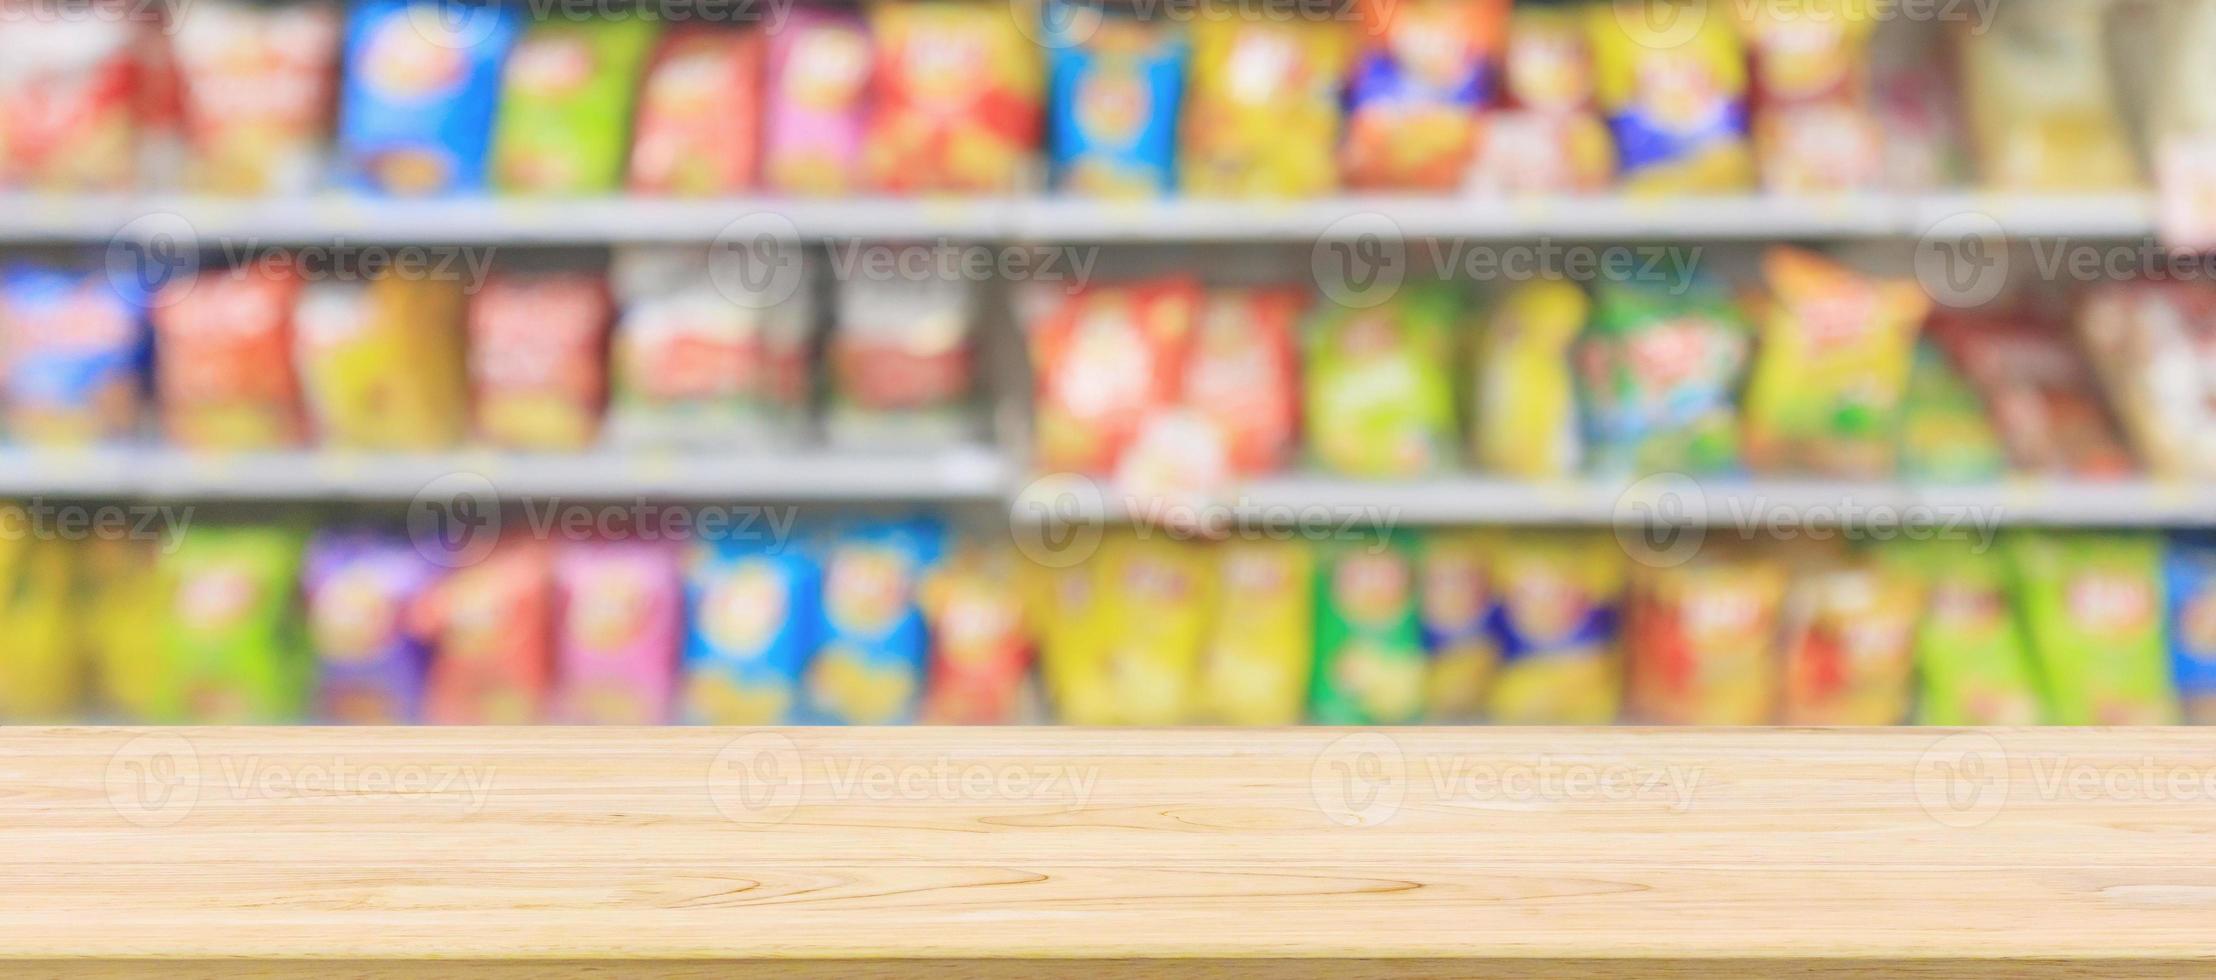 tampo da mesa de madeira com prateleiras de loja de conveniência de supermercado com batatas fritas lanche borrão abstrato foto